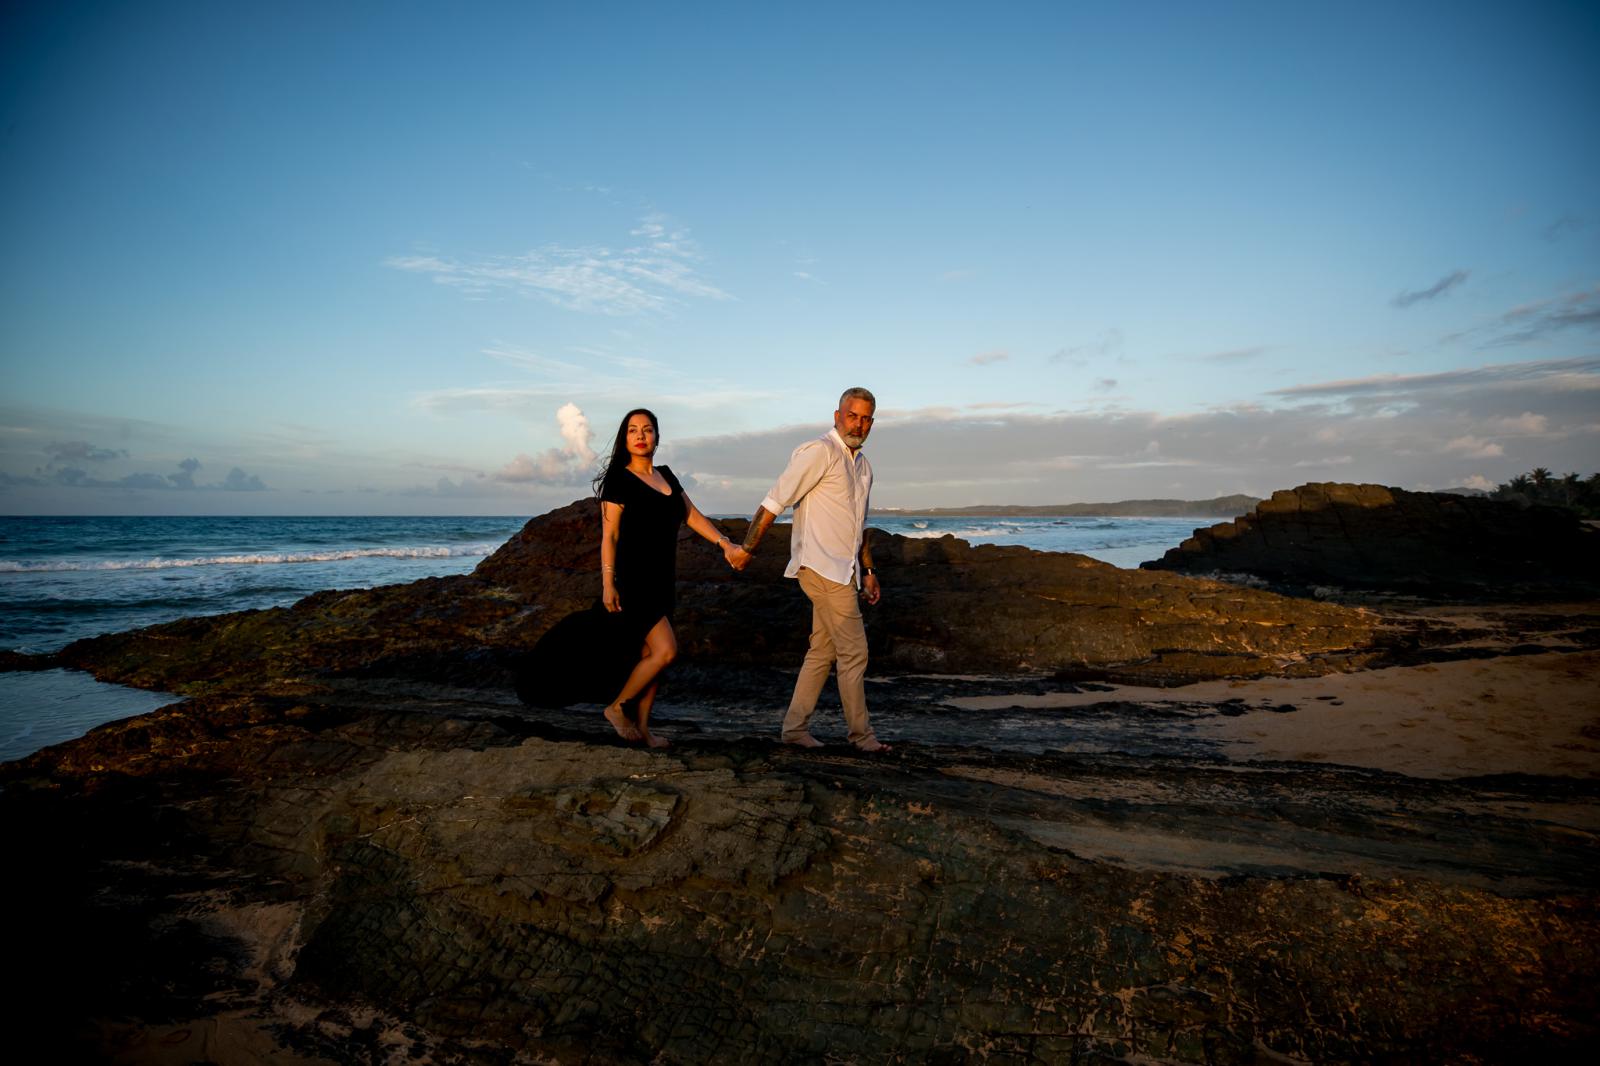 Ja zeggen op een huwelijksaanzoek in Puerto Rico door bruidsfotograaf Den Haag